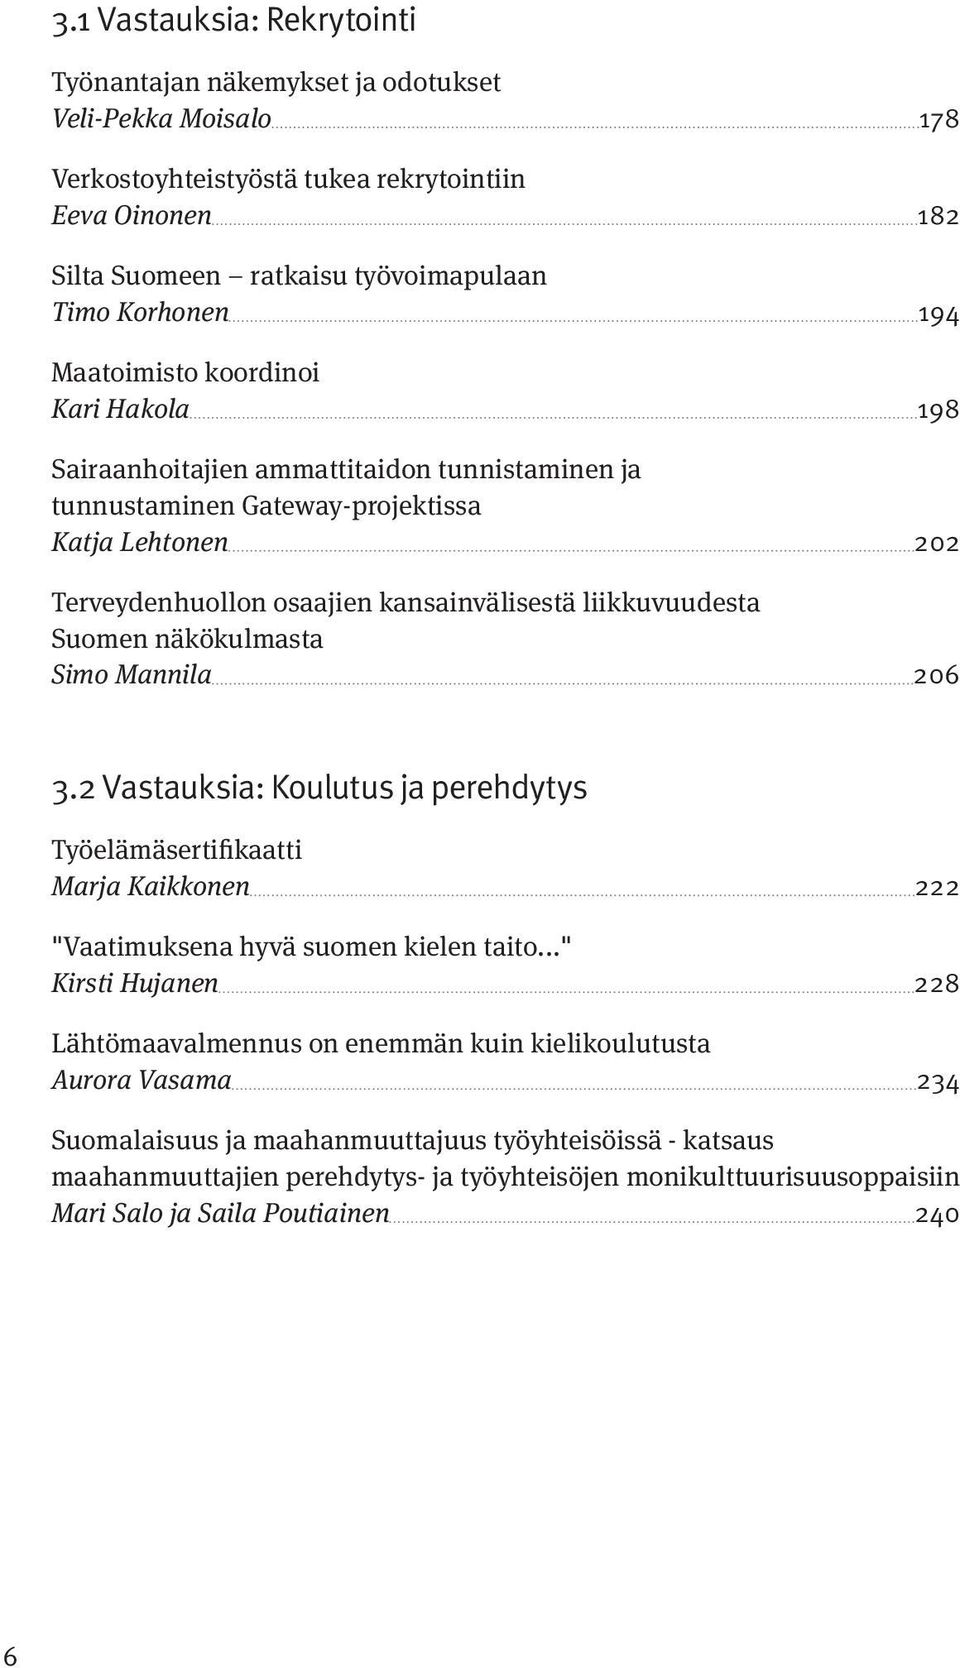 liikkuvuudesta Suomen näkökulmasta Simo Mannila 206 3.2 Vastauksia: Koulutus ja perehdytys Työelämäsertifikaatti Marja Kaikkonen 222 "Vaatimuksena hyvä suomen kielen taito.